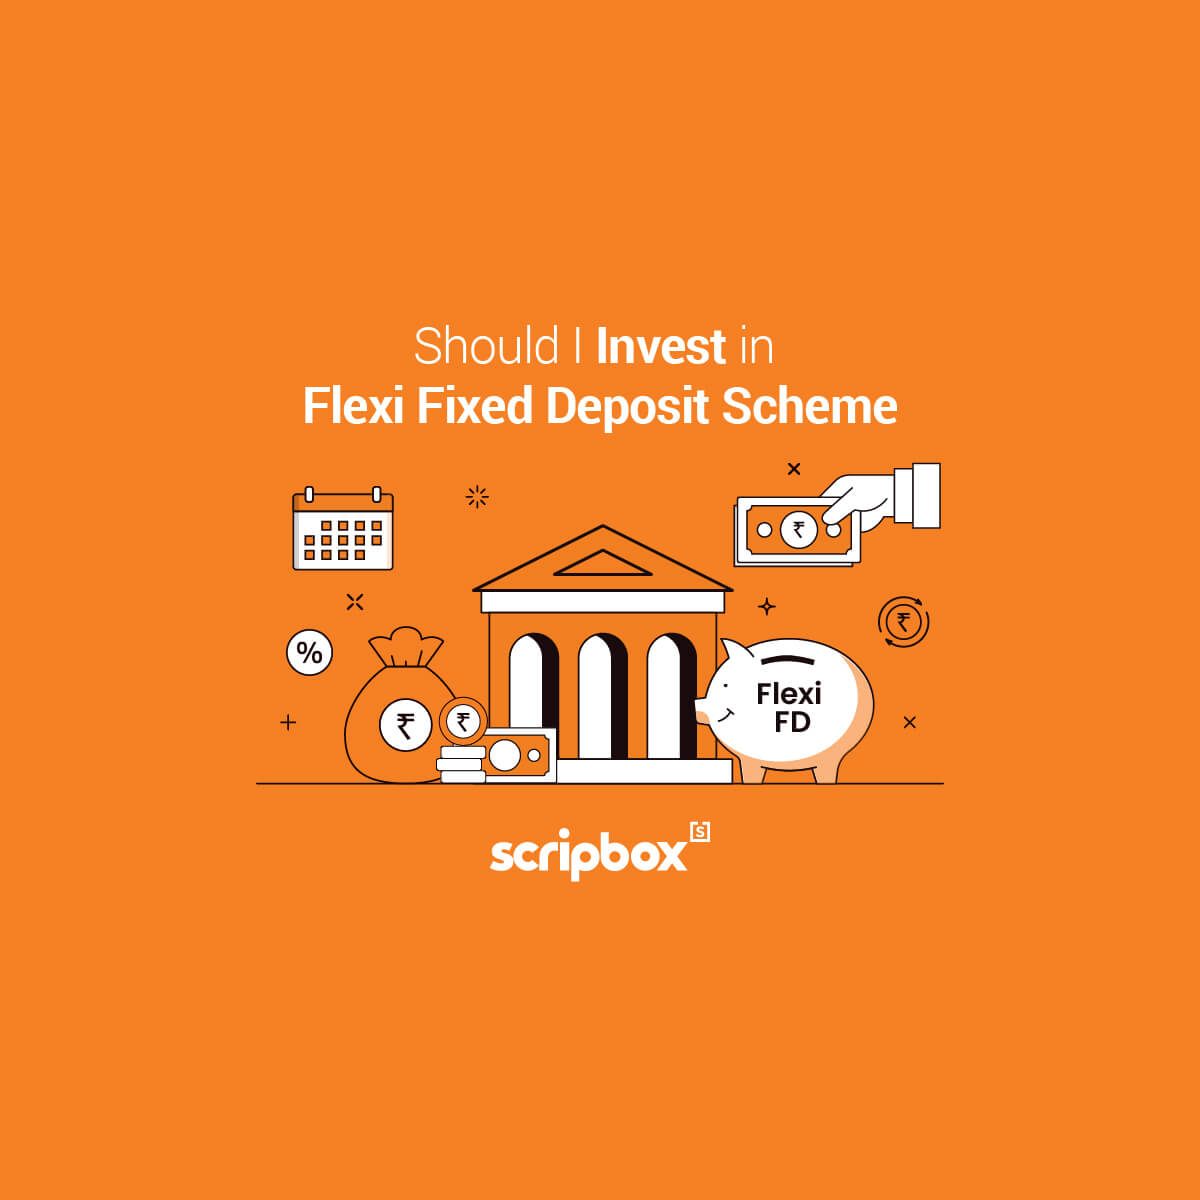 flexi fixed deposit scheme